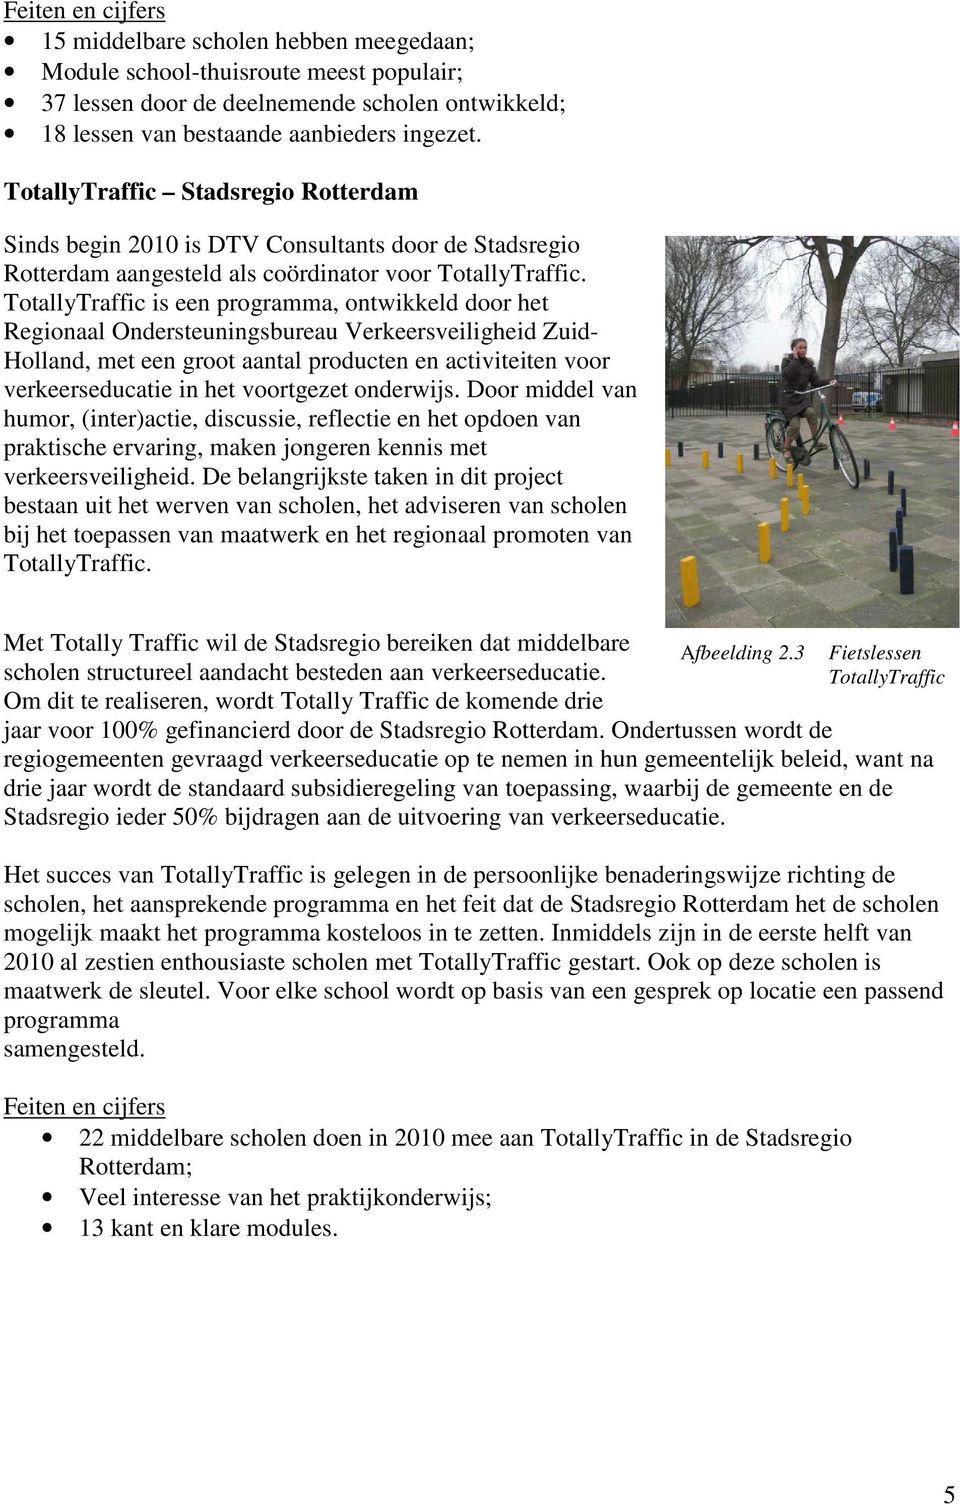 TotallyTraffic is een programma, ontwikkeld door het Regionaal Ondersteuningsbureau Verkeersveiligheid Zuid- Holland, met een groot aantal producten en activiteiten voor verkeerseducatie in het